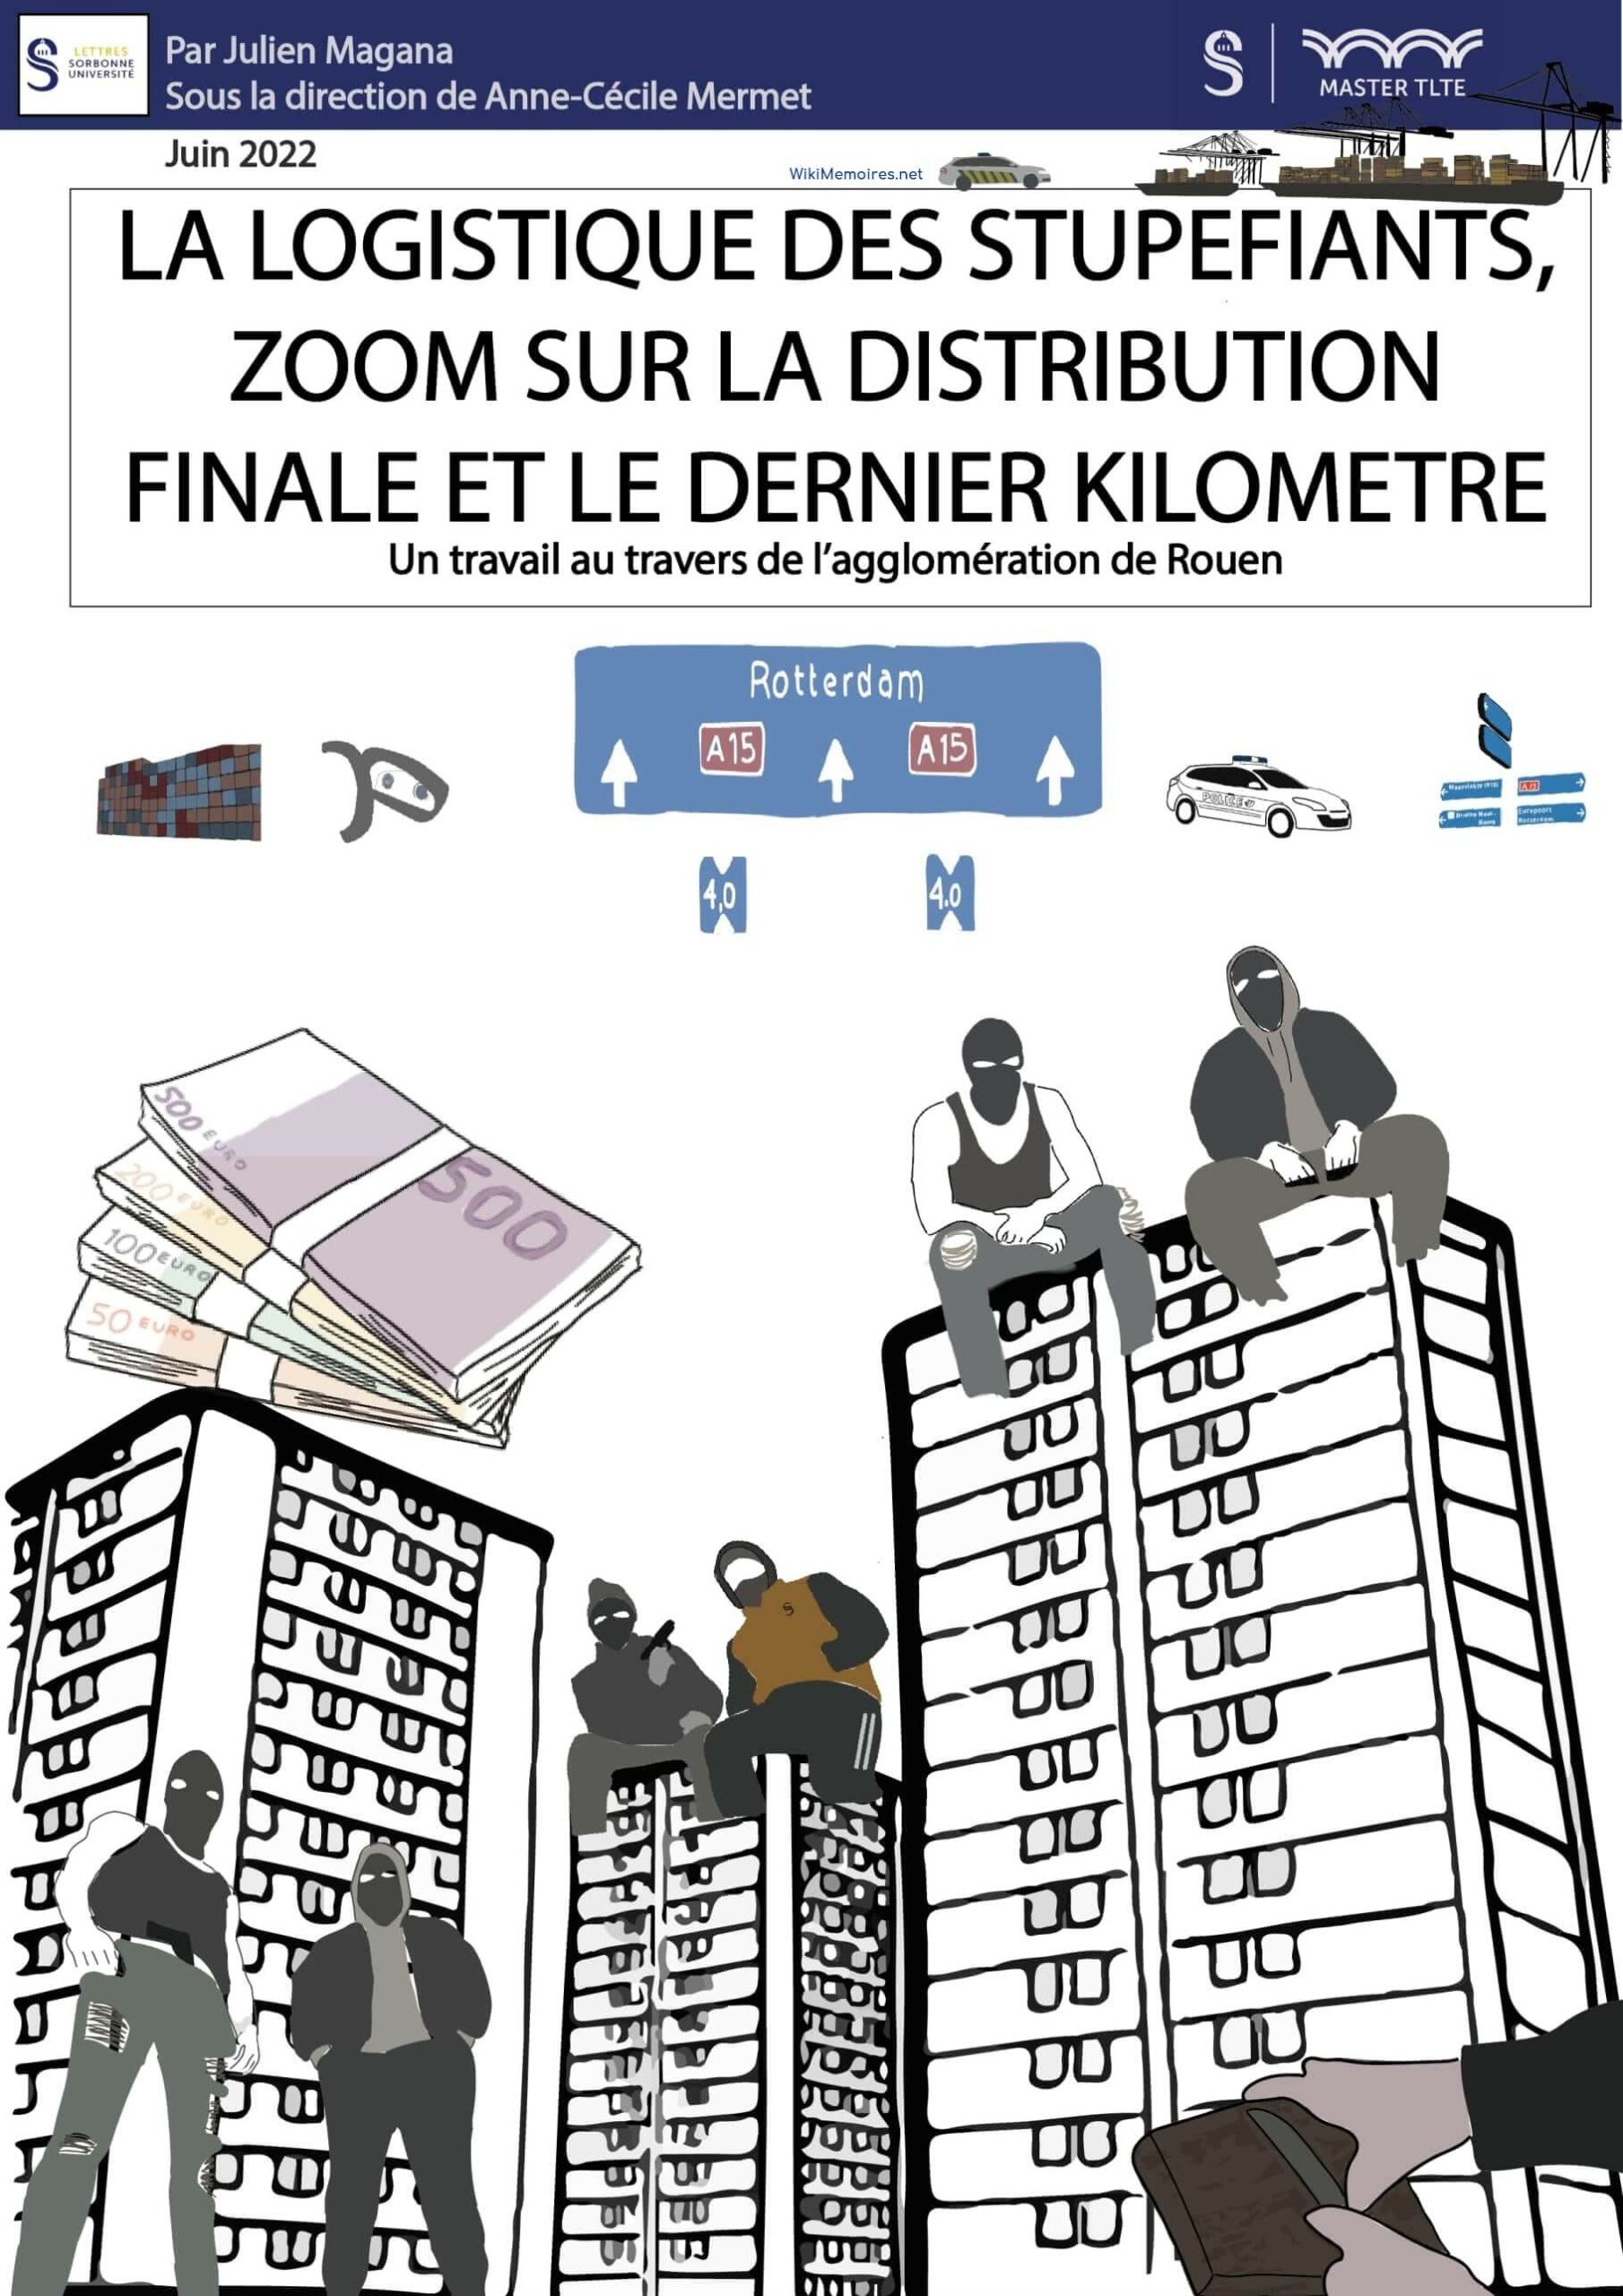 La logistique des stupéfiants : Zoom sur la distribution finale et le dernier kilomètre Un travail au travers de l’agglomération de Rouen